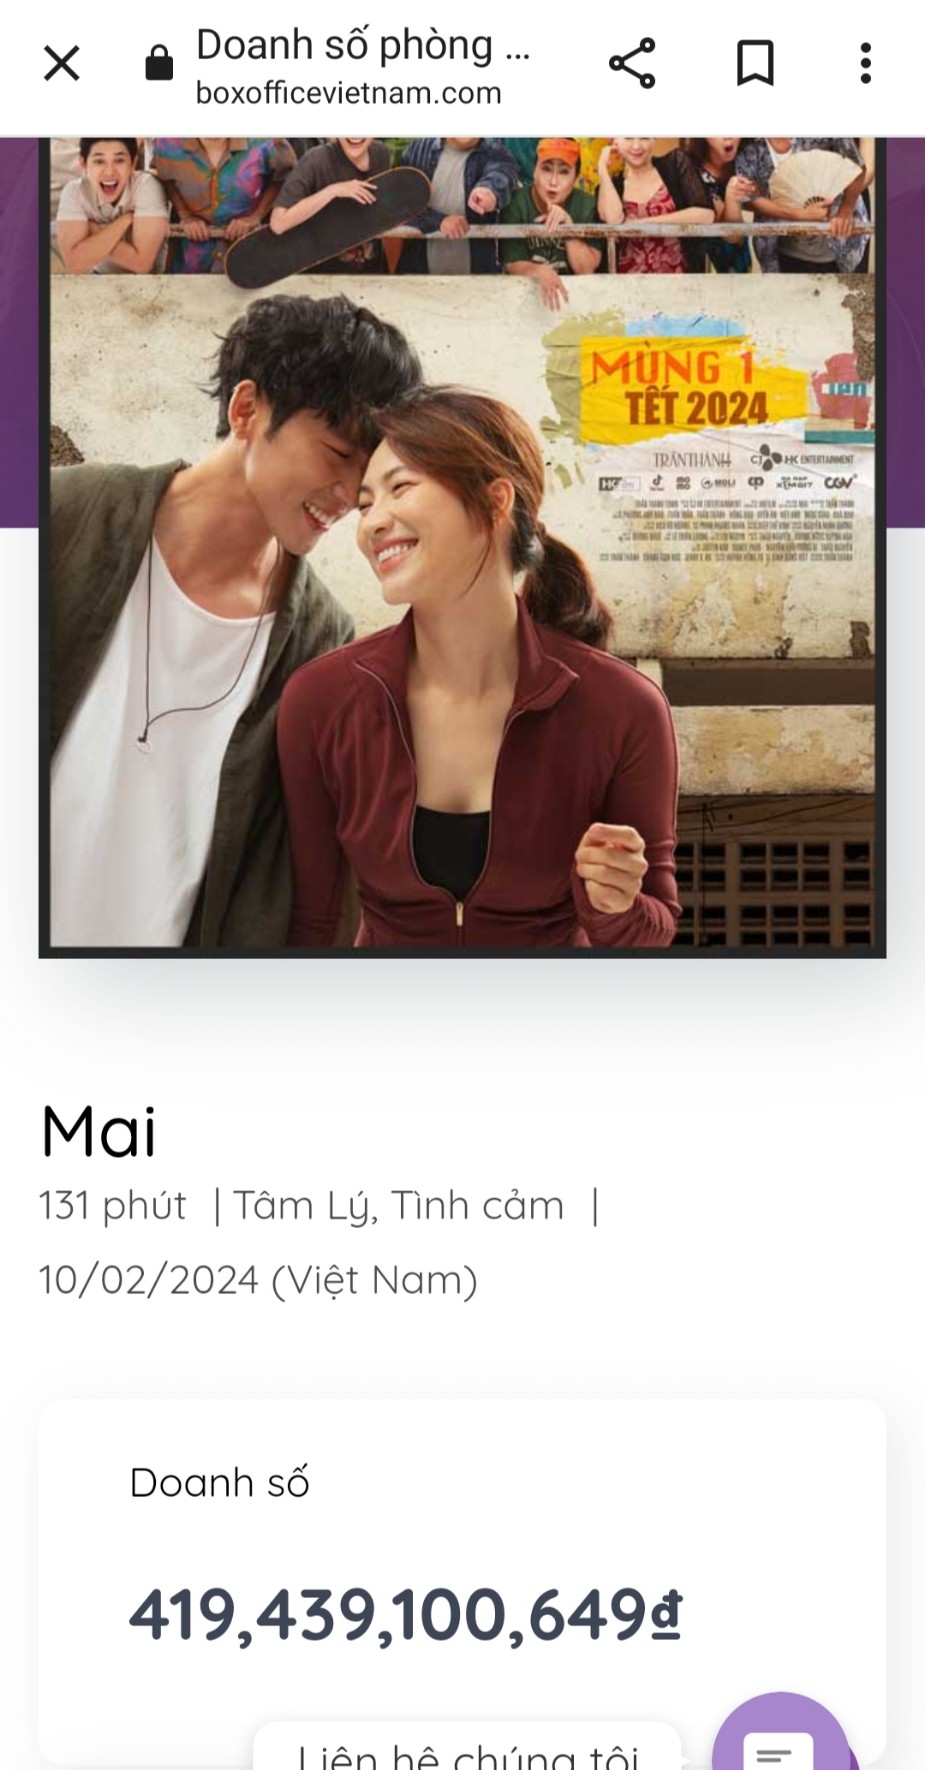 Box Office Vietnam khẳng định: “Cứ 23 người Việt Nam có 1 người xem phim Mai"- Ảnh 1.